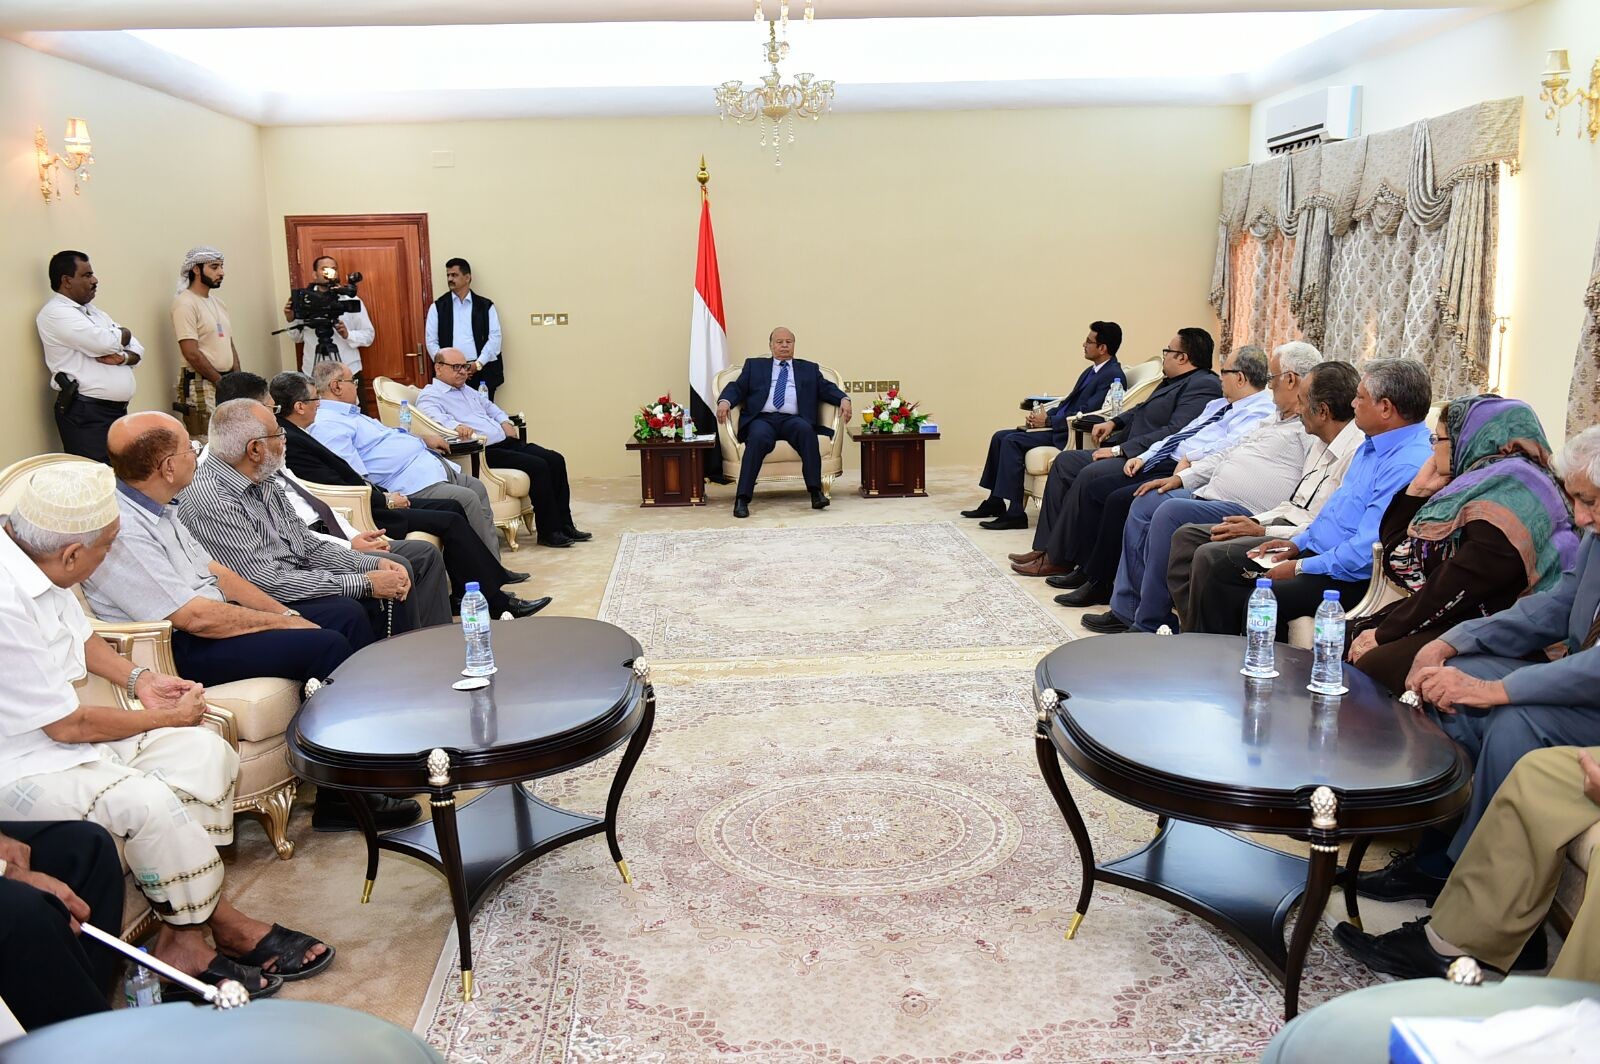 الرئيس هادي يلتقي بالشخصيات الاجتماعية لمحافظه عدن " صور "